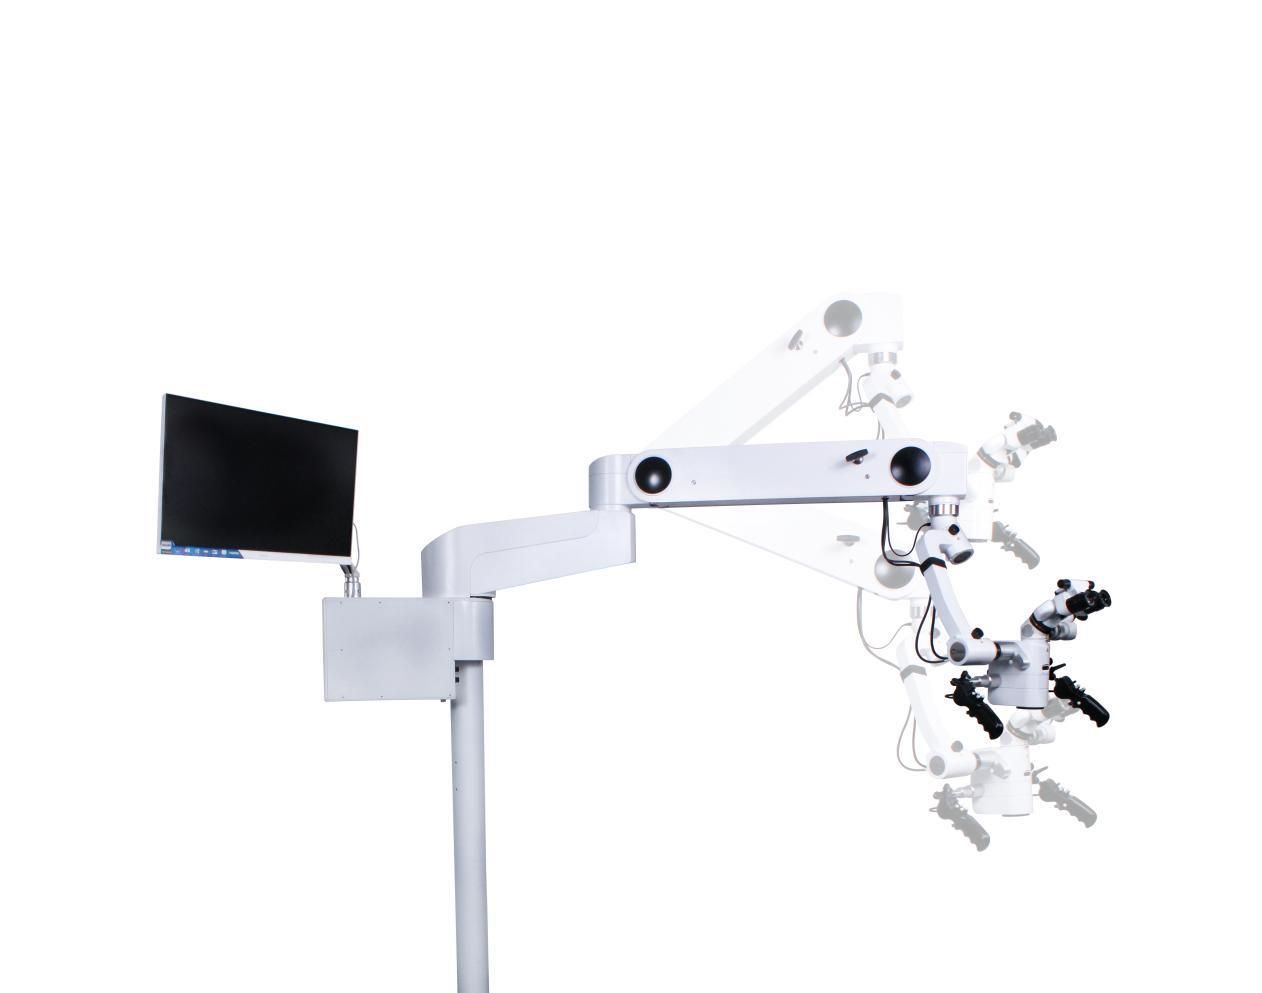 Uproszczony przewodnik po użyciu mikroskopów neurochirurgicznych